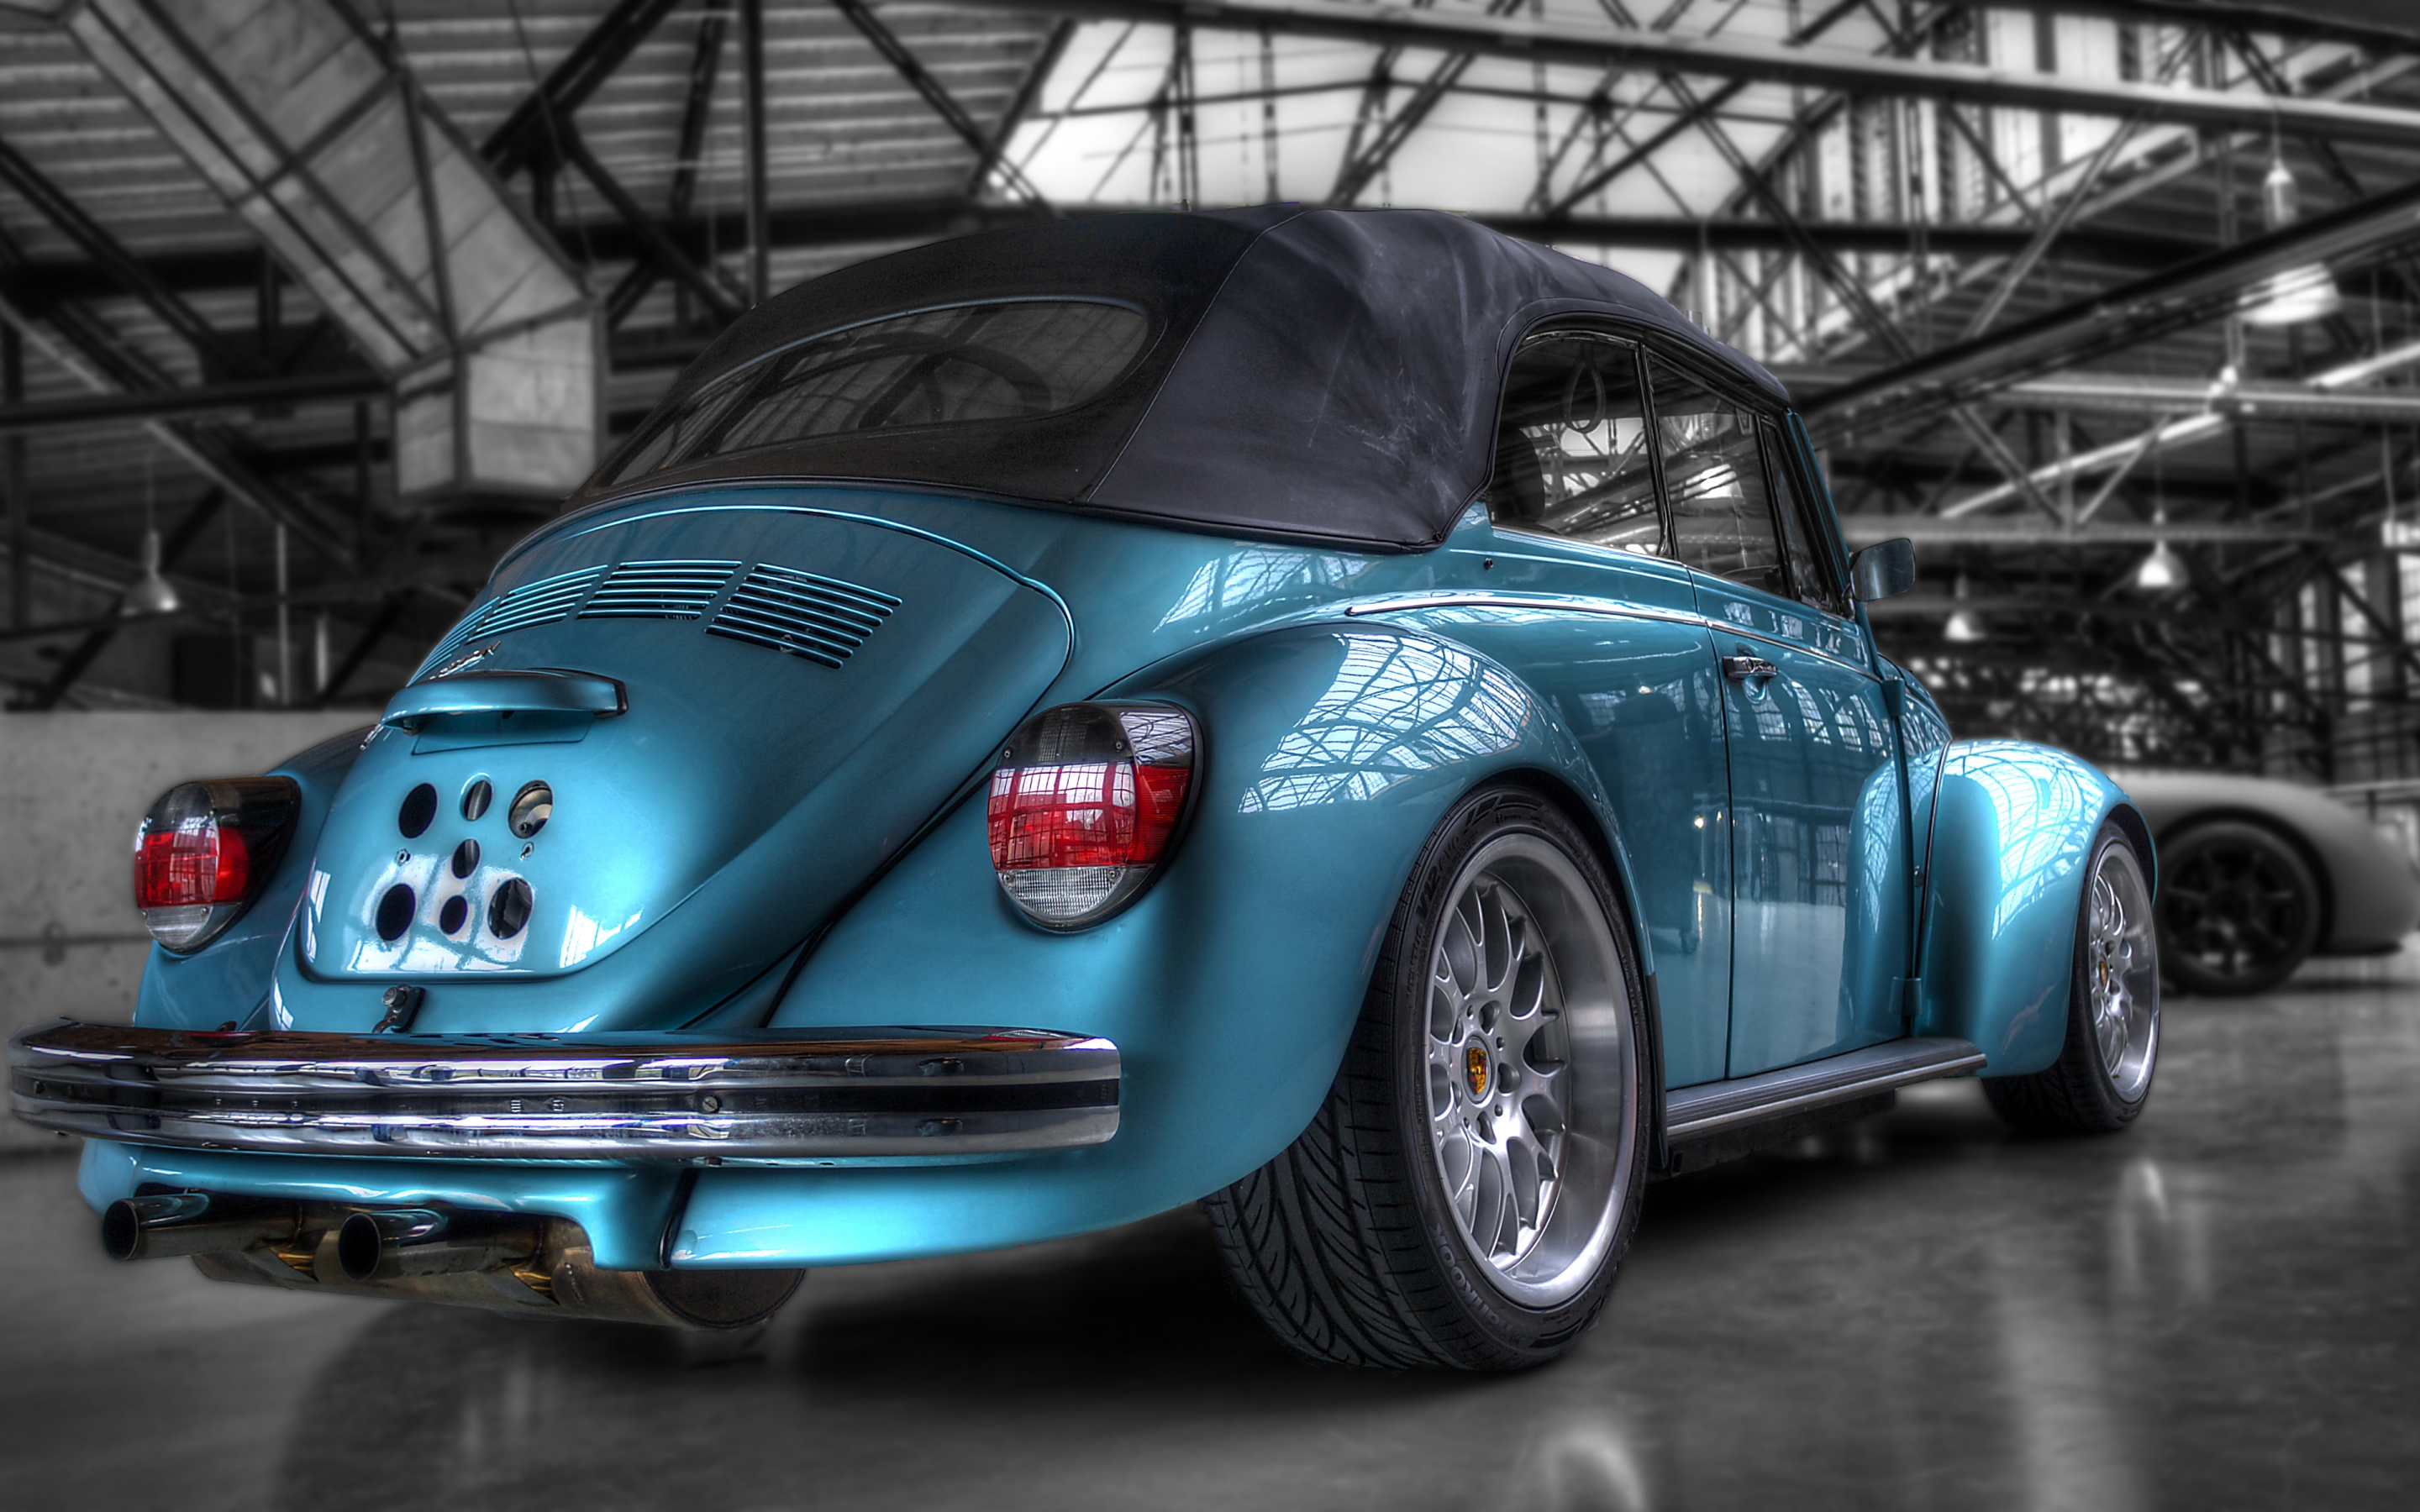 Volkswagen Super Beetle for 2880 x 1800 Retina Display resolution